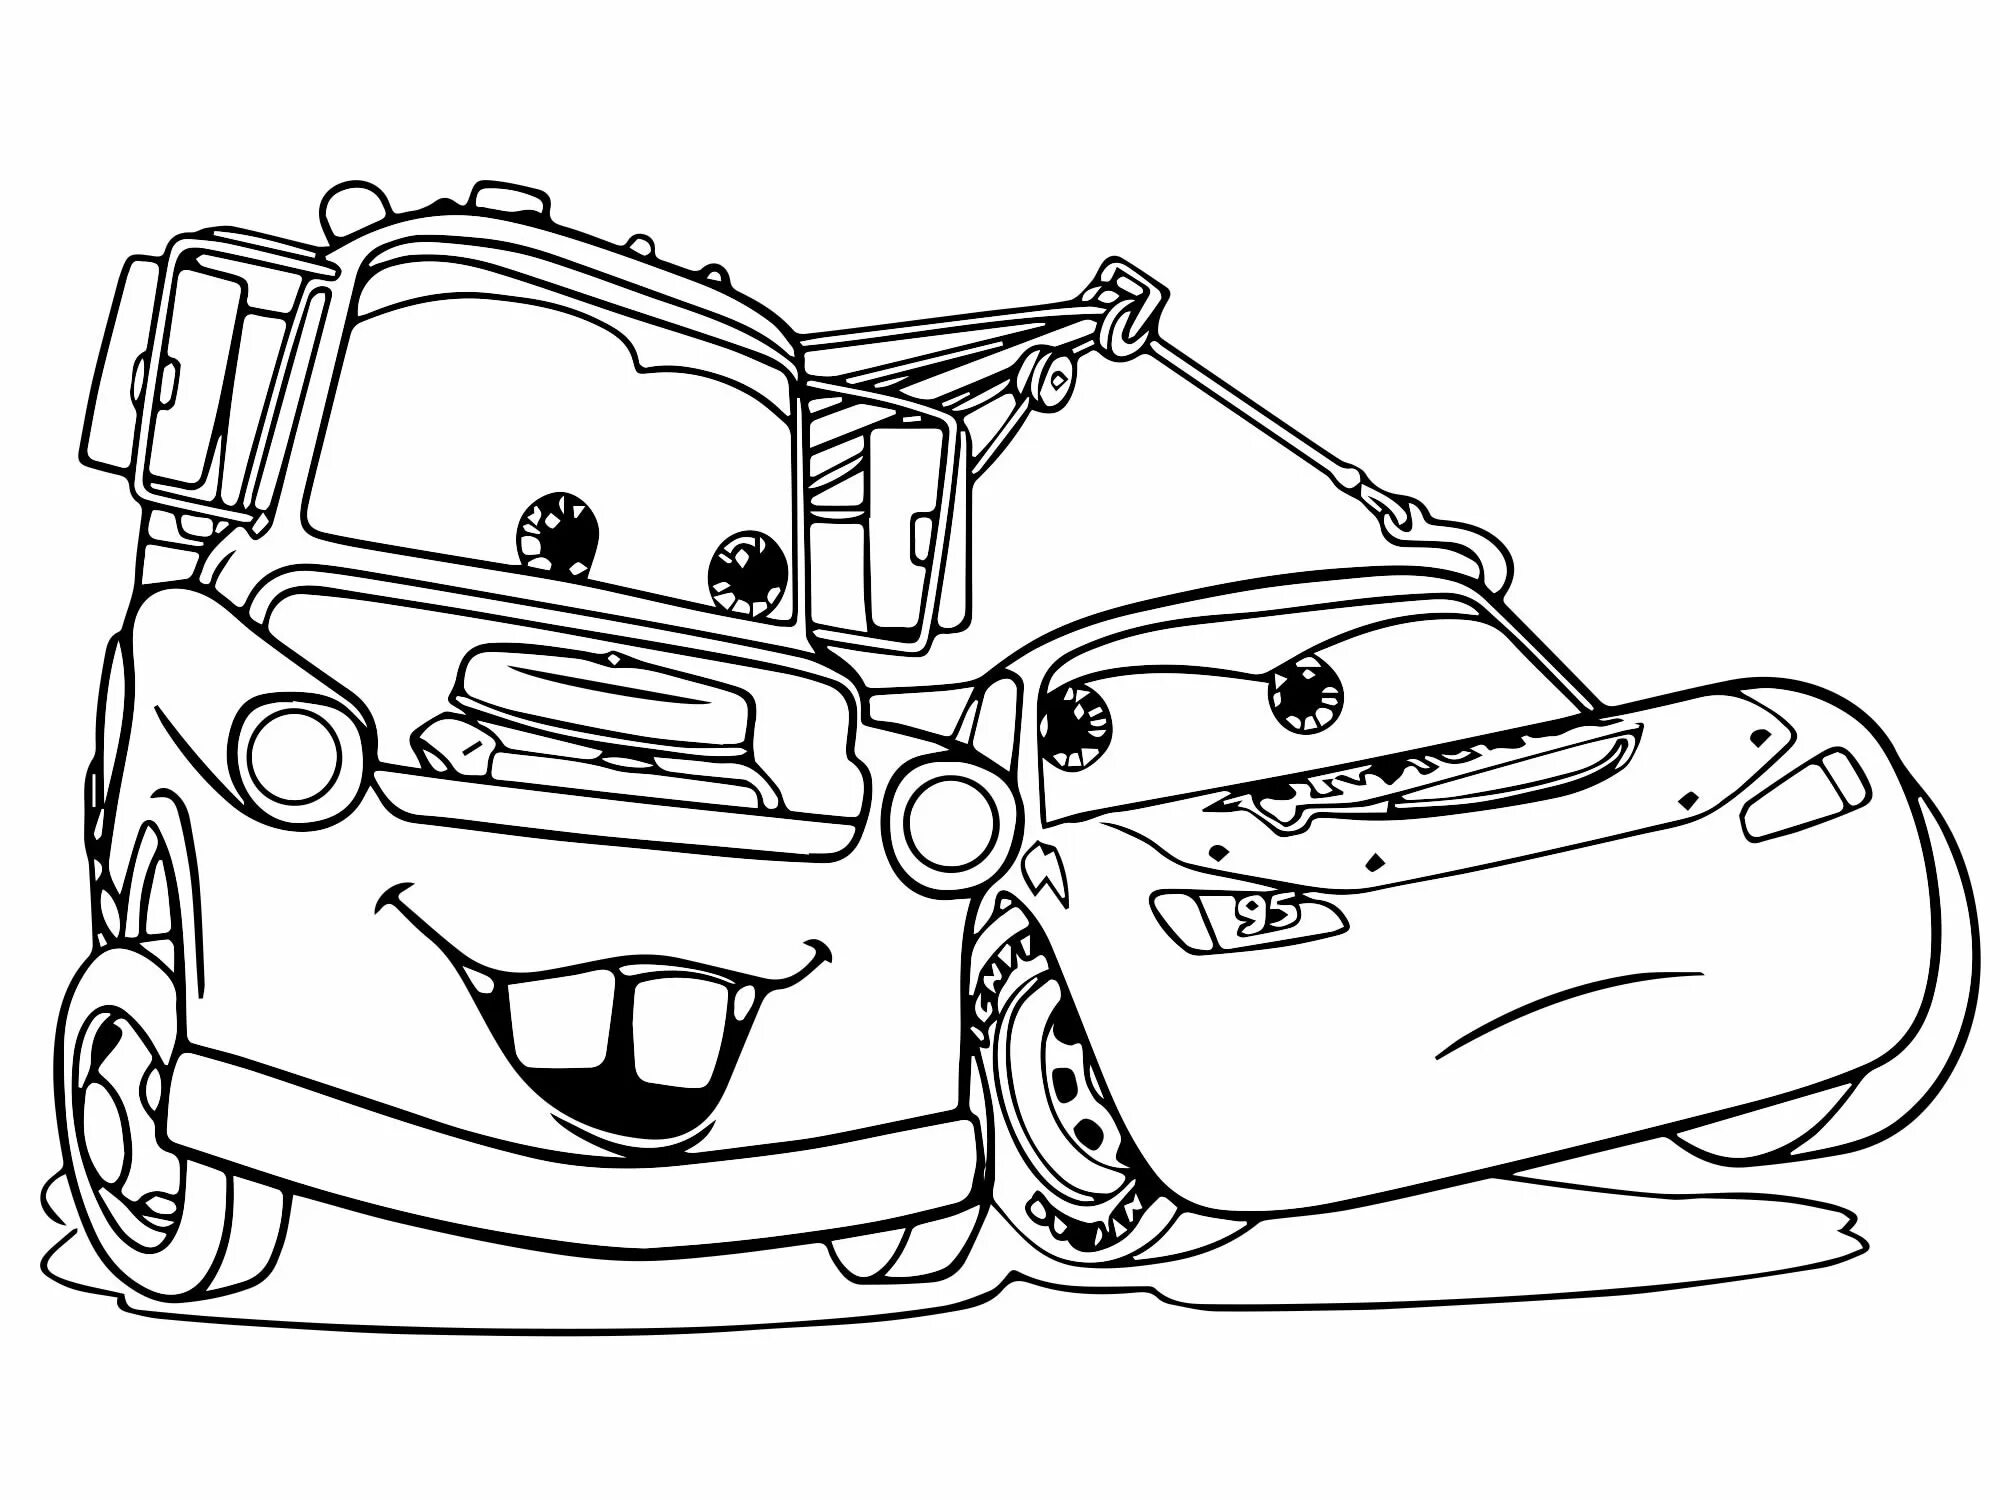 Charming makvin car coloring picture